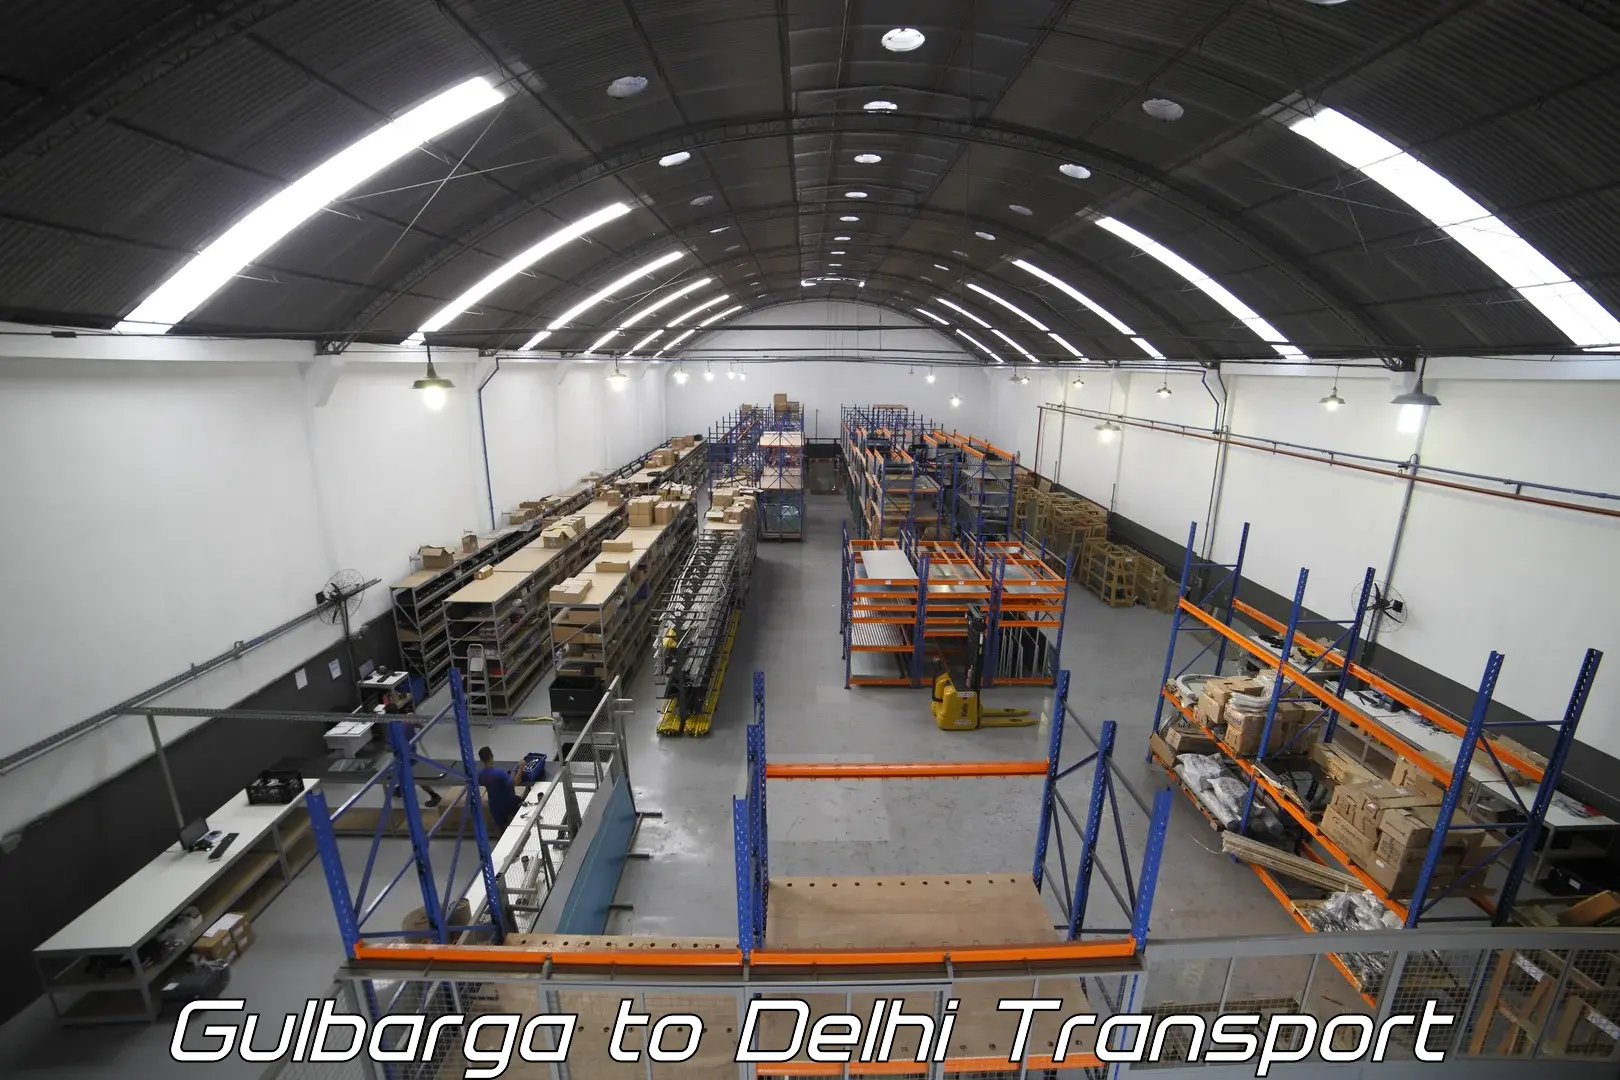 Express transport services Gulbarga to Jamia Millia Islamia New Delhi